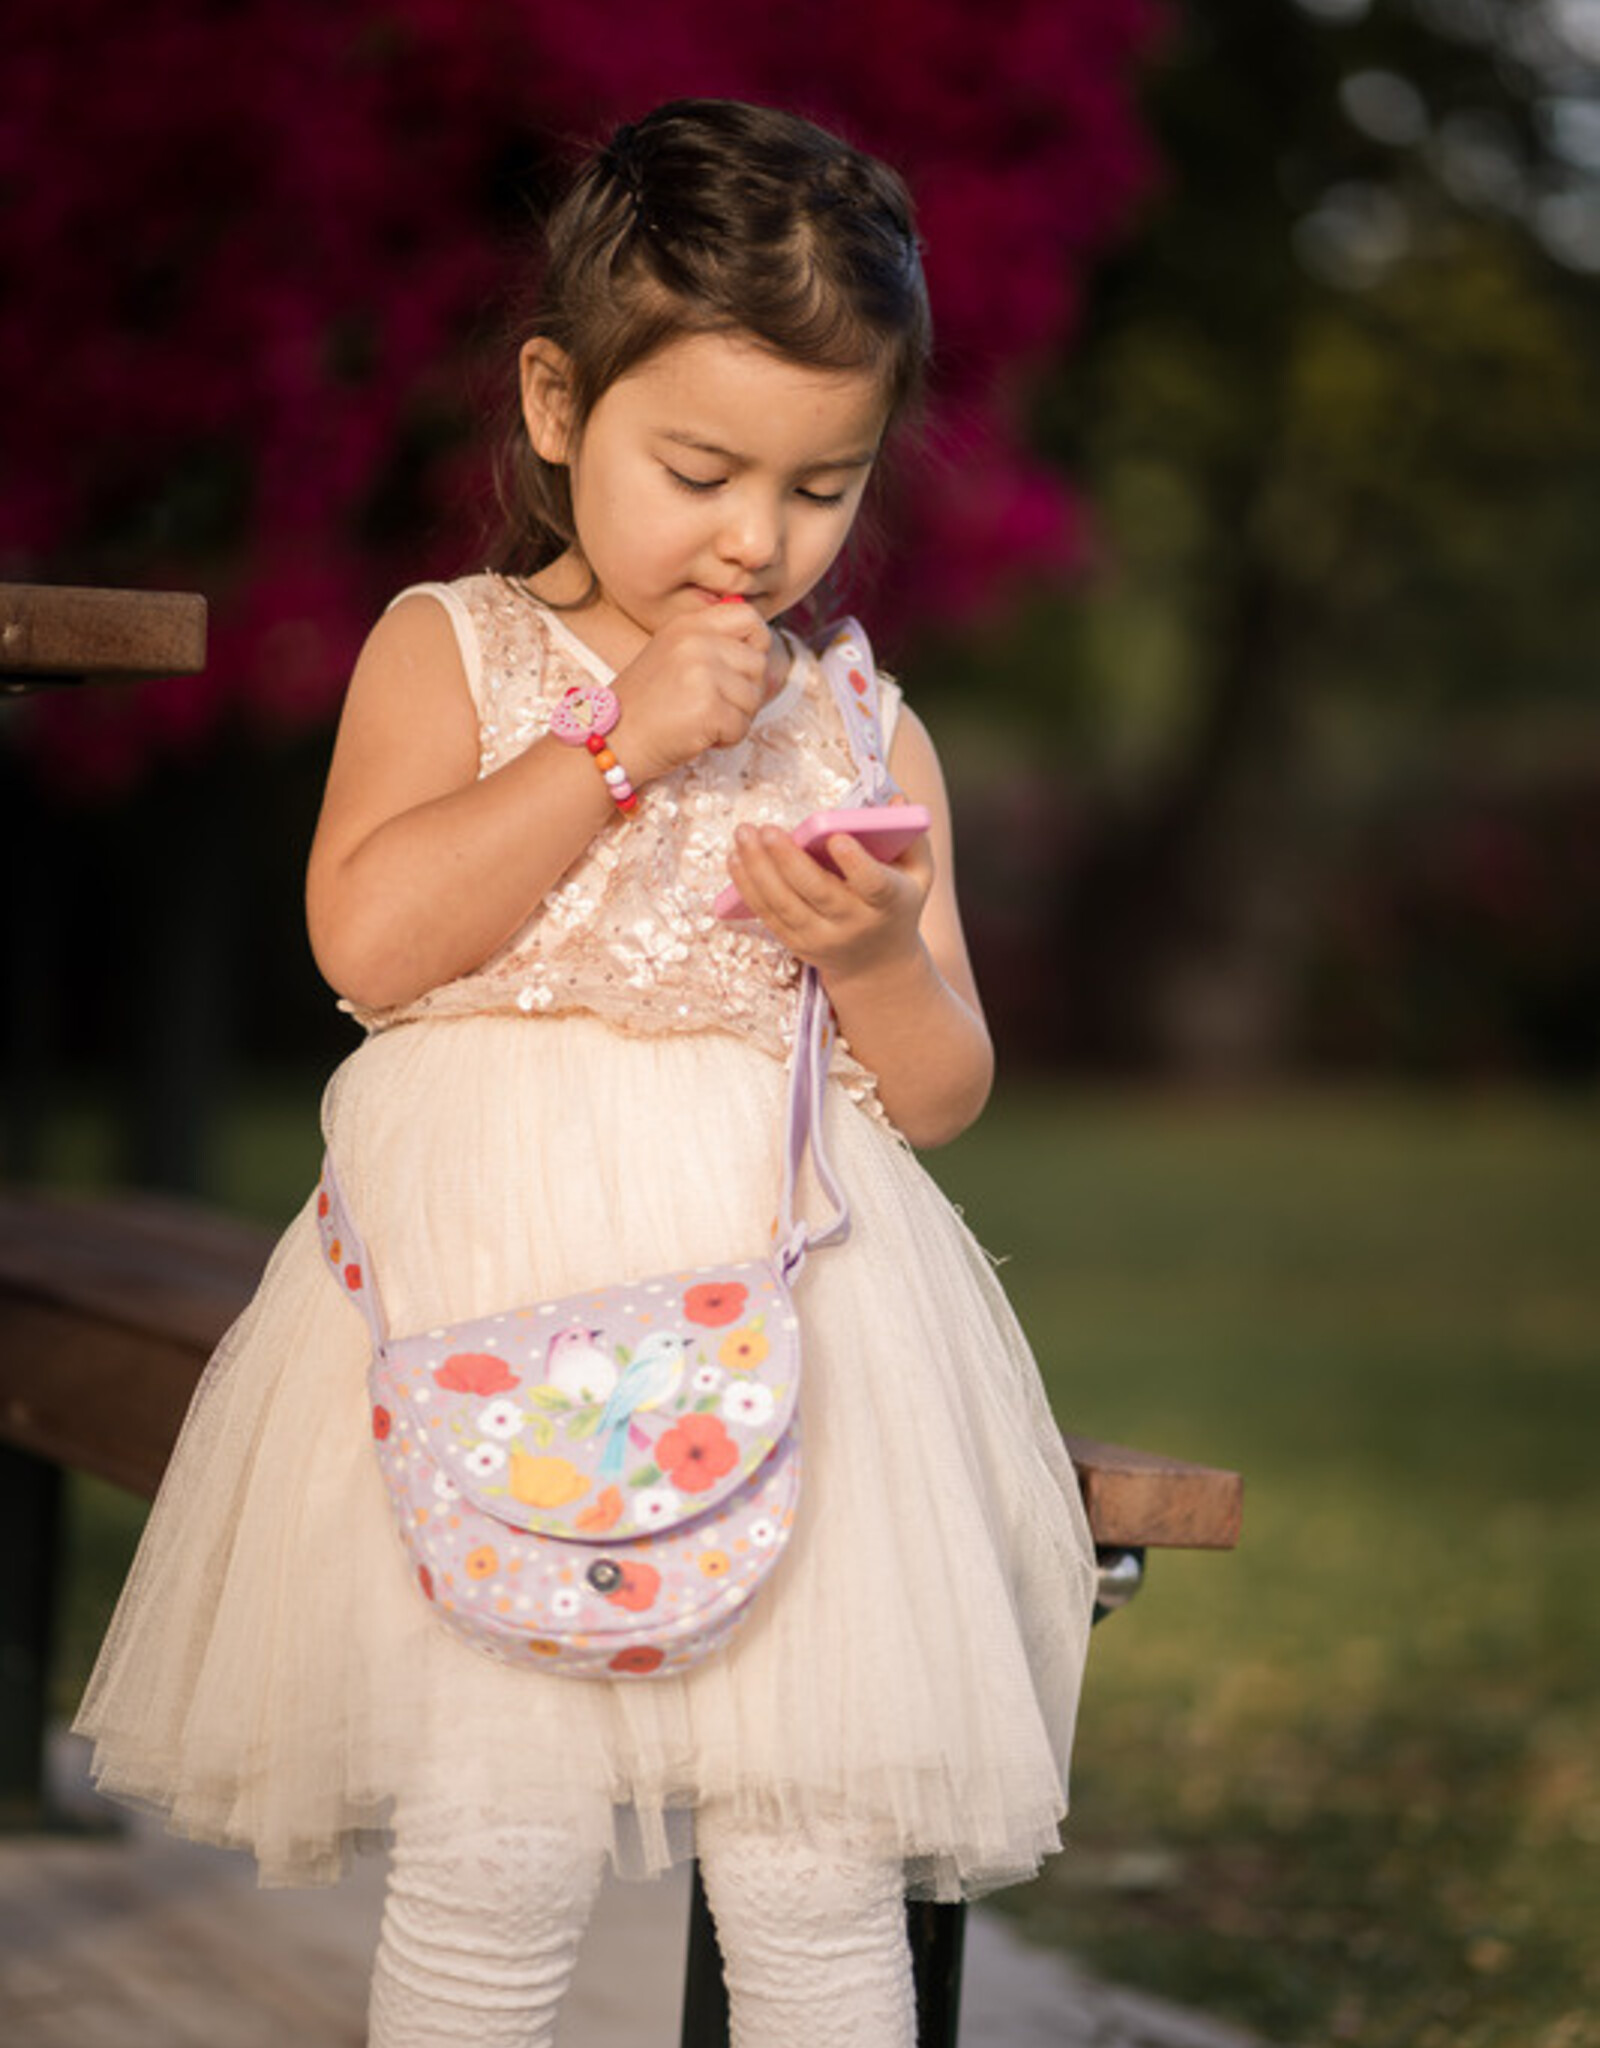 Djeco Djeco - Birdie Bag & Accessories